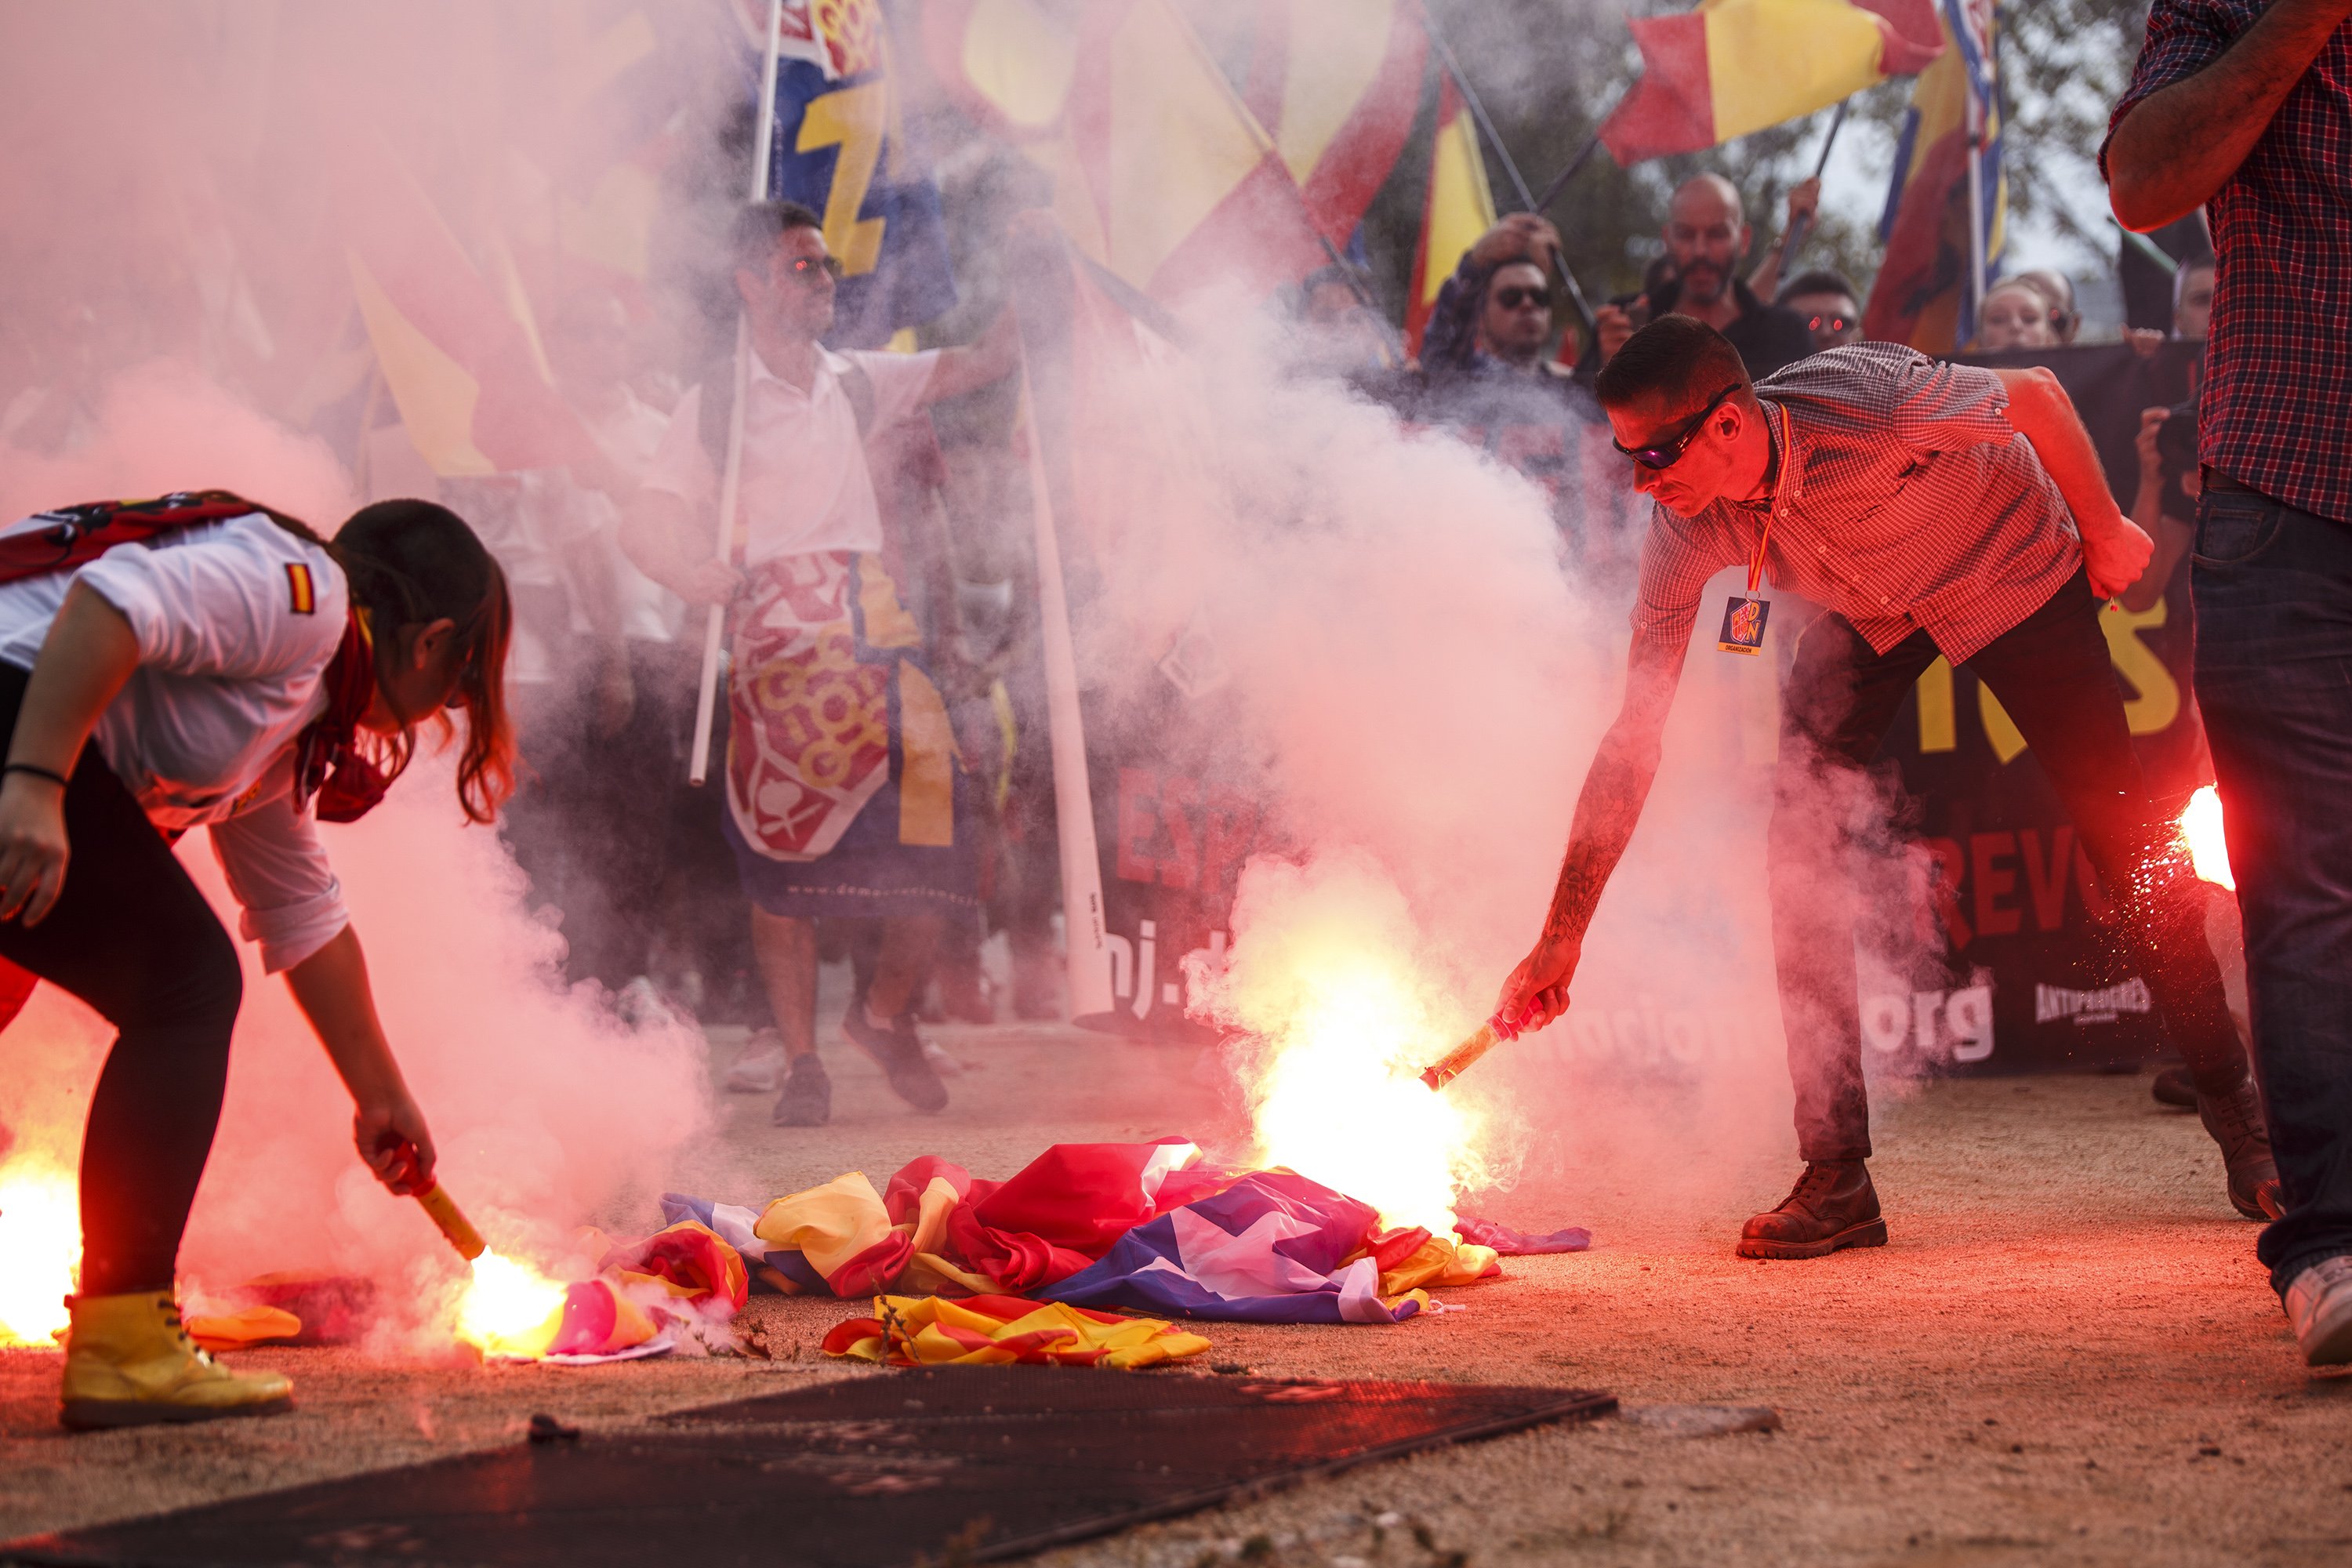 Galería: Queman esteladas en la manifestación ultra de Montjuïc